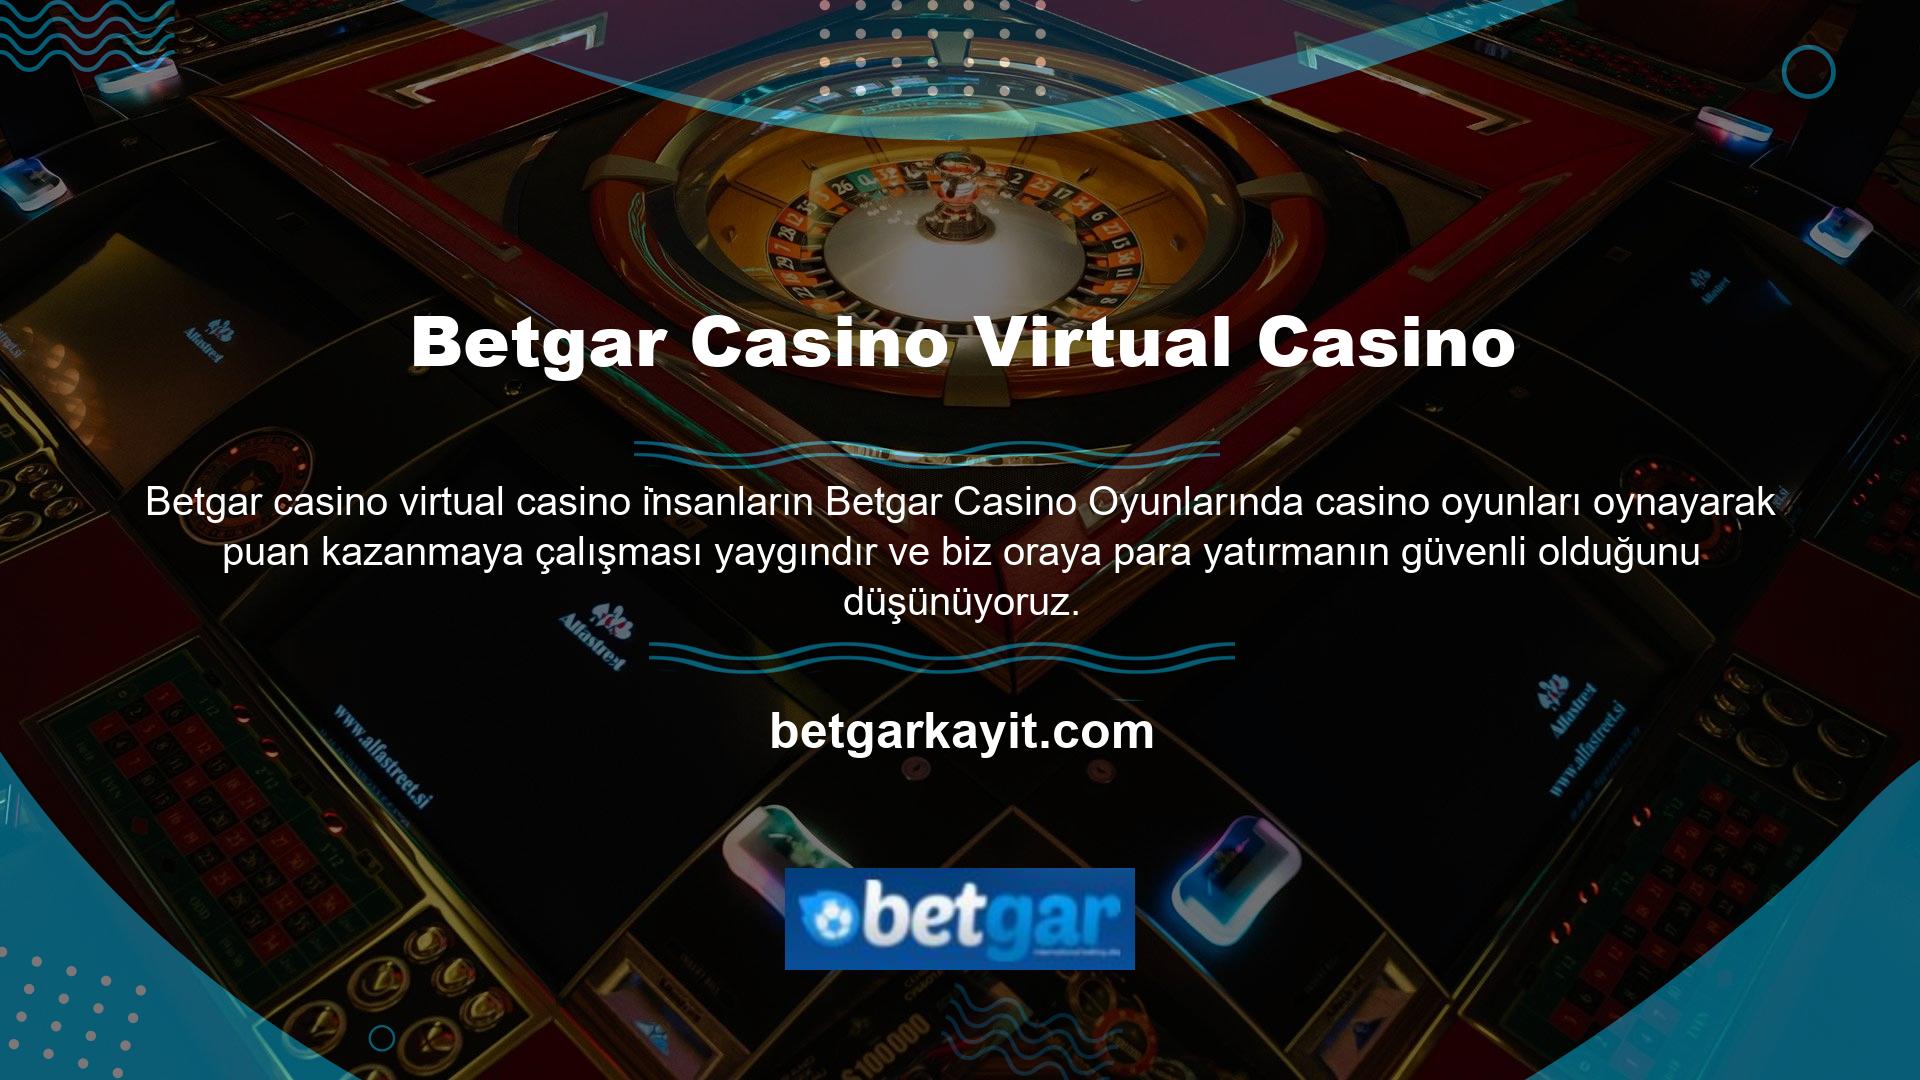 Sitenin casino oyunları, para yatırma veya kazançlarda herhangi bir kayıp olmaksızın makul derecede güvenlidir